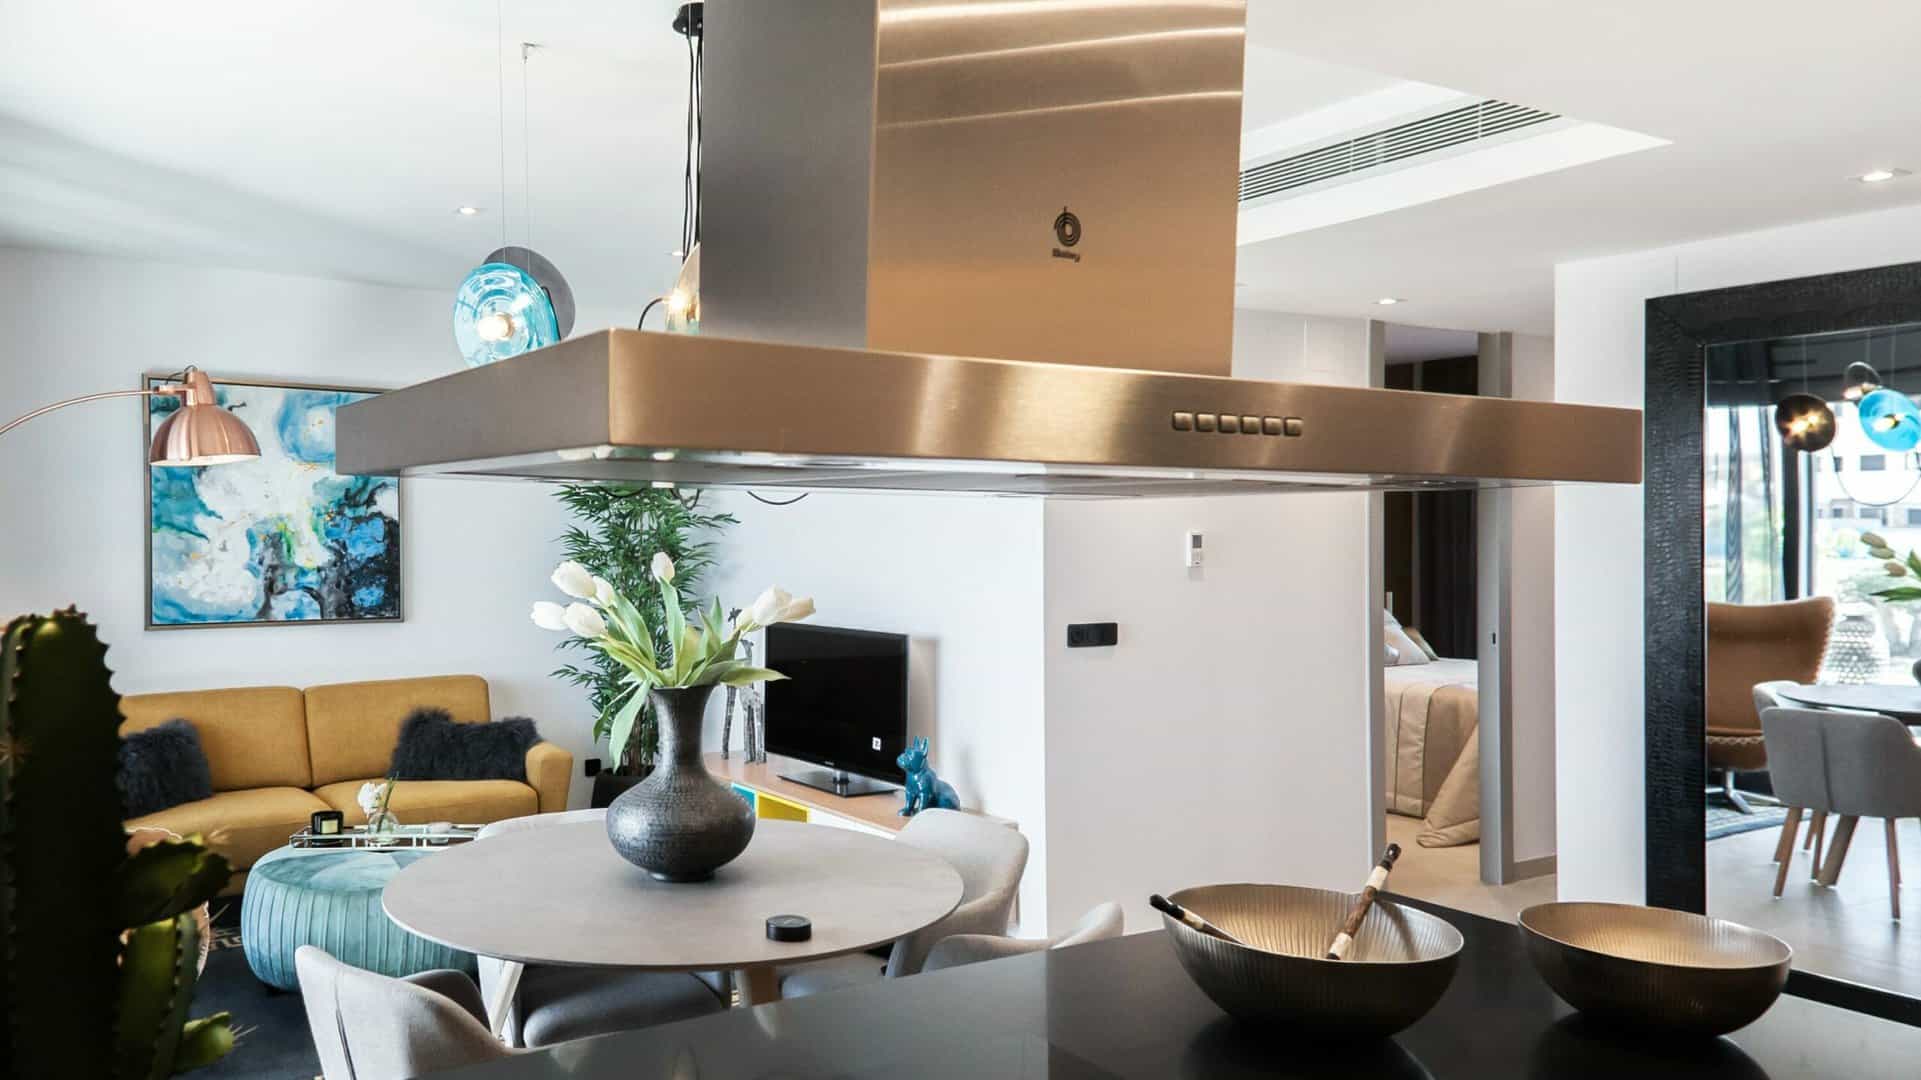 Zilveren afzuigkap boven een kookplaat, in een open keuken.